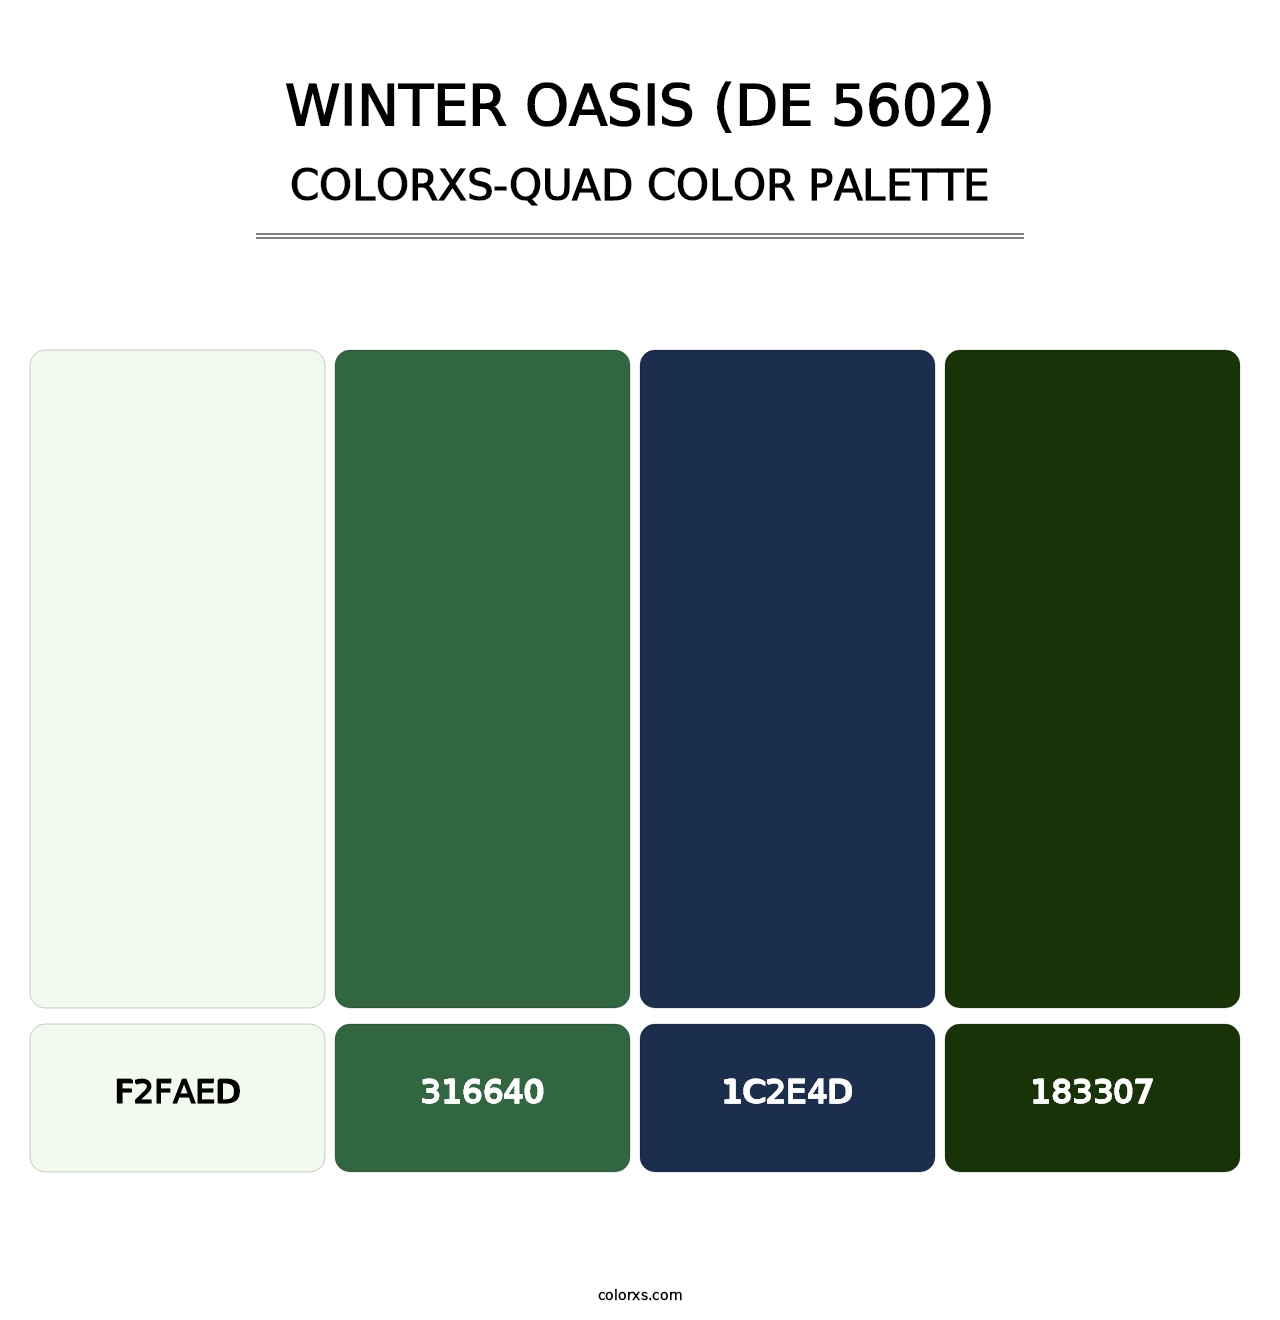 Winter Oasis (DE 5602) - Colorxs Quad Palette